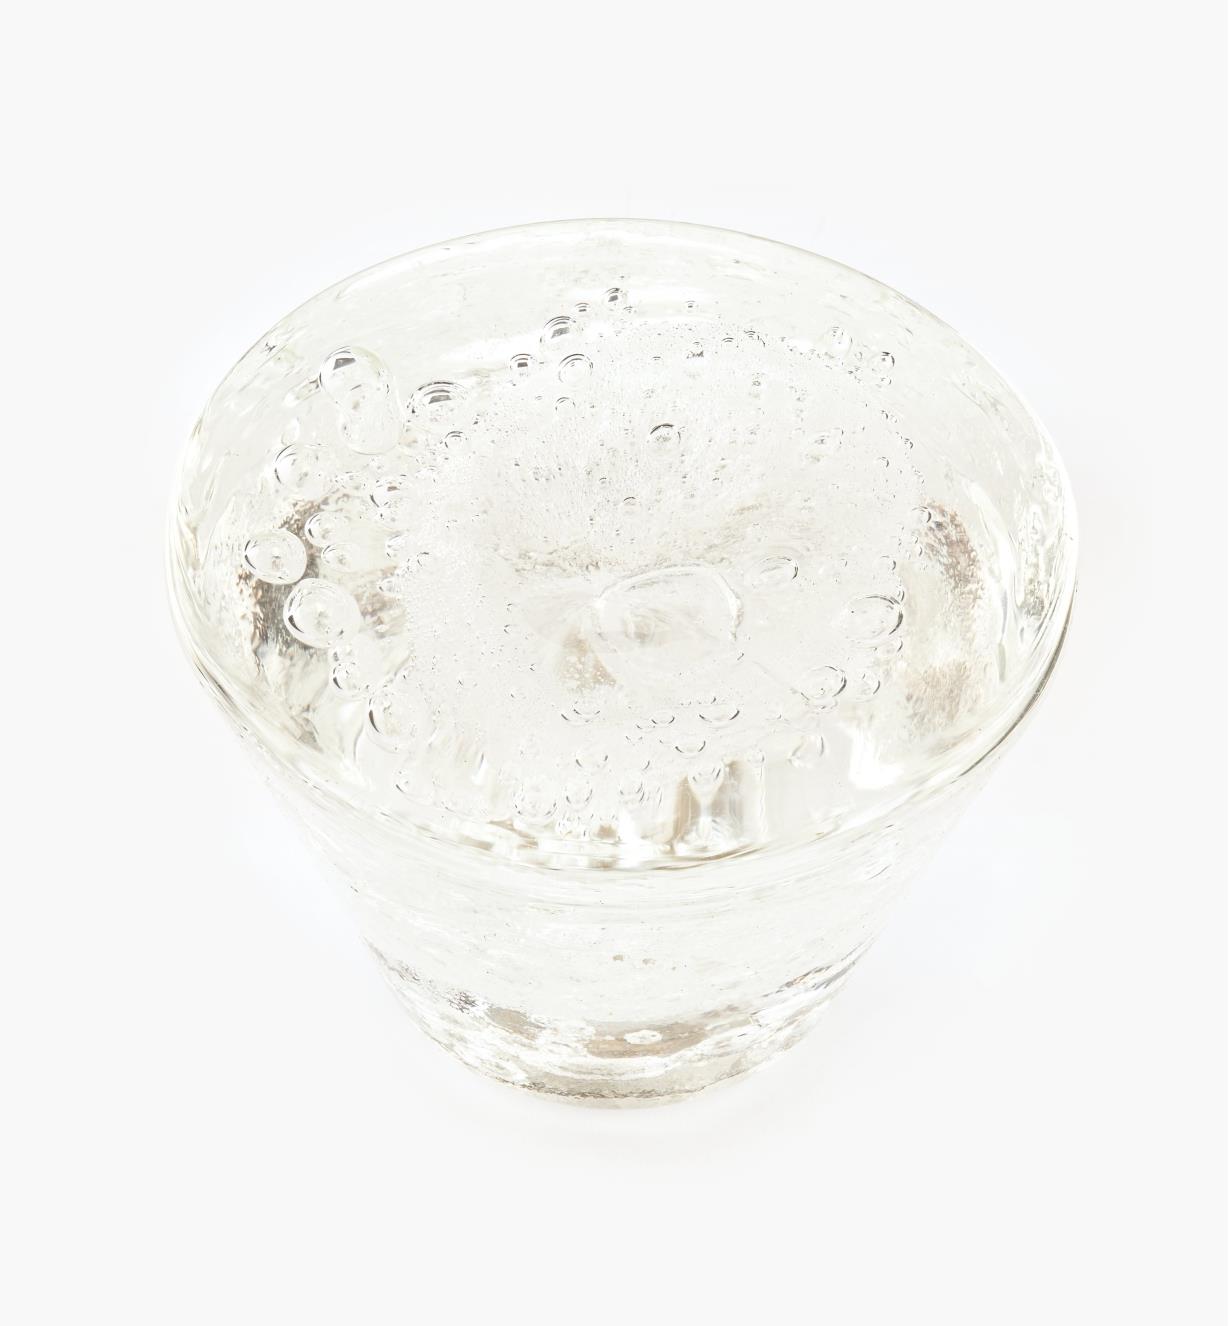 00A7714 - Bouton en verre de Murano Laguna, cristal, 1 po x 1 7/16 po